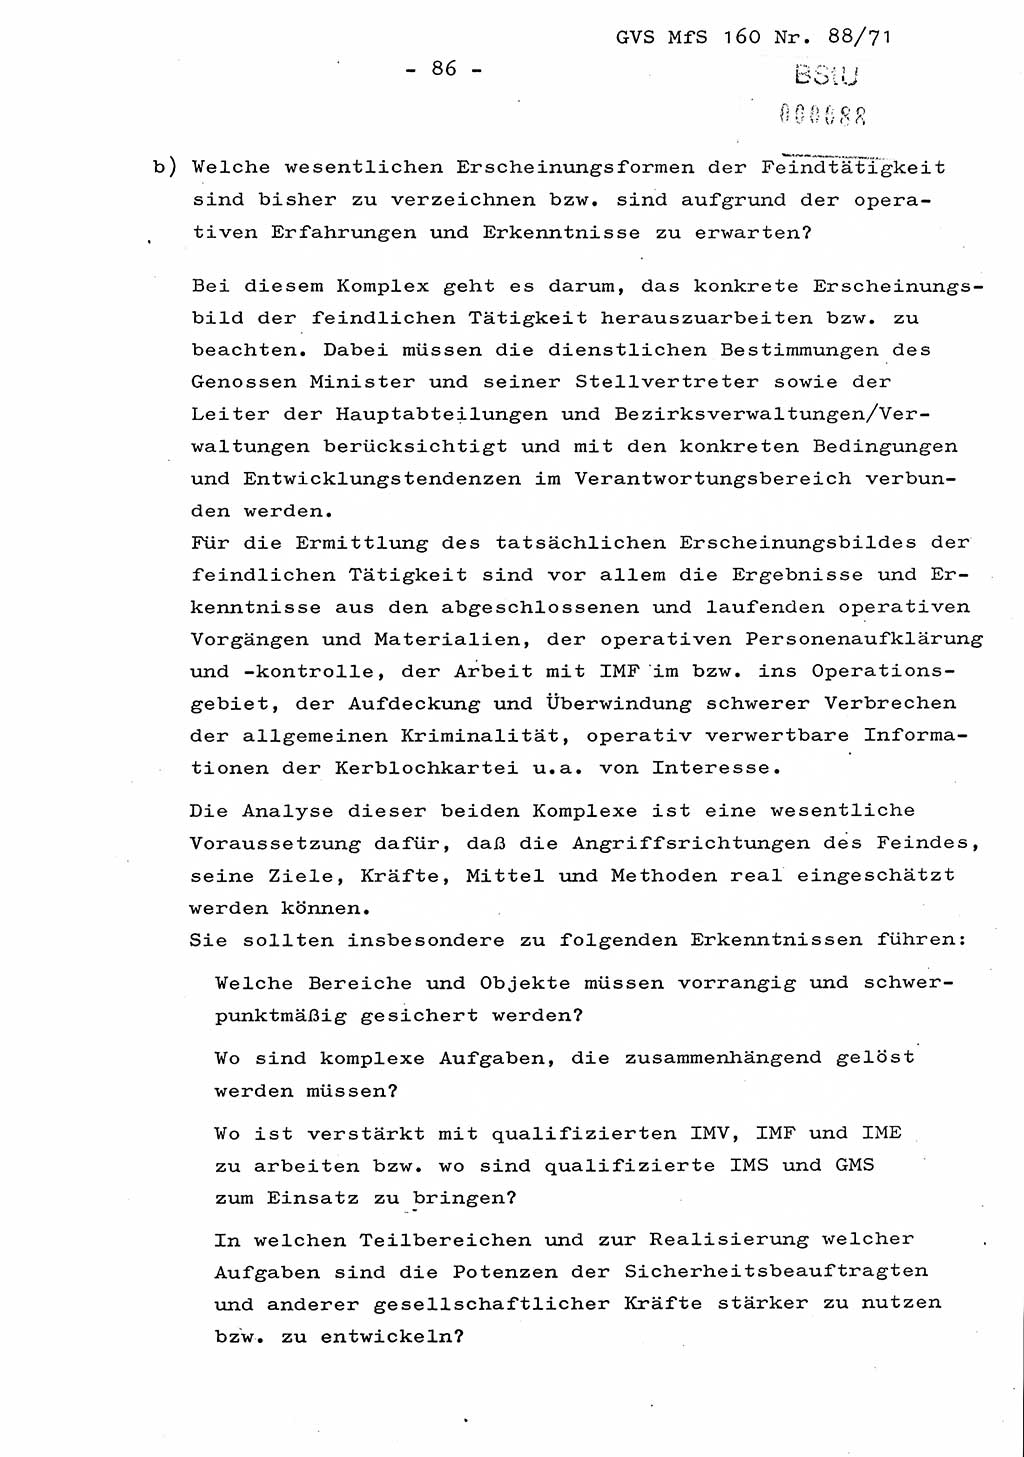 Dissertation Oberstleutnant Josef Schwarz (BV Schwerin), Major Fritz Amm (JHS), Hauptmann Peter Gräßler (JHS), Ministerium für Staatssicherheit (MfS) [Deutsche Demokratische Republik (DDR)], Juristische Hochschule (JHS), Geheime Verschlußsache (GVS) 160-88/71, Potsdam 1972, Seite 86 (Diss. MfS DDR JHS GVS 160-88/71 1972, S. 86)